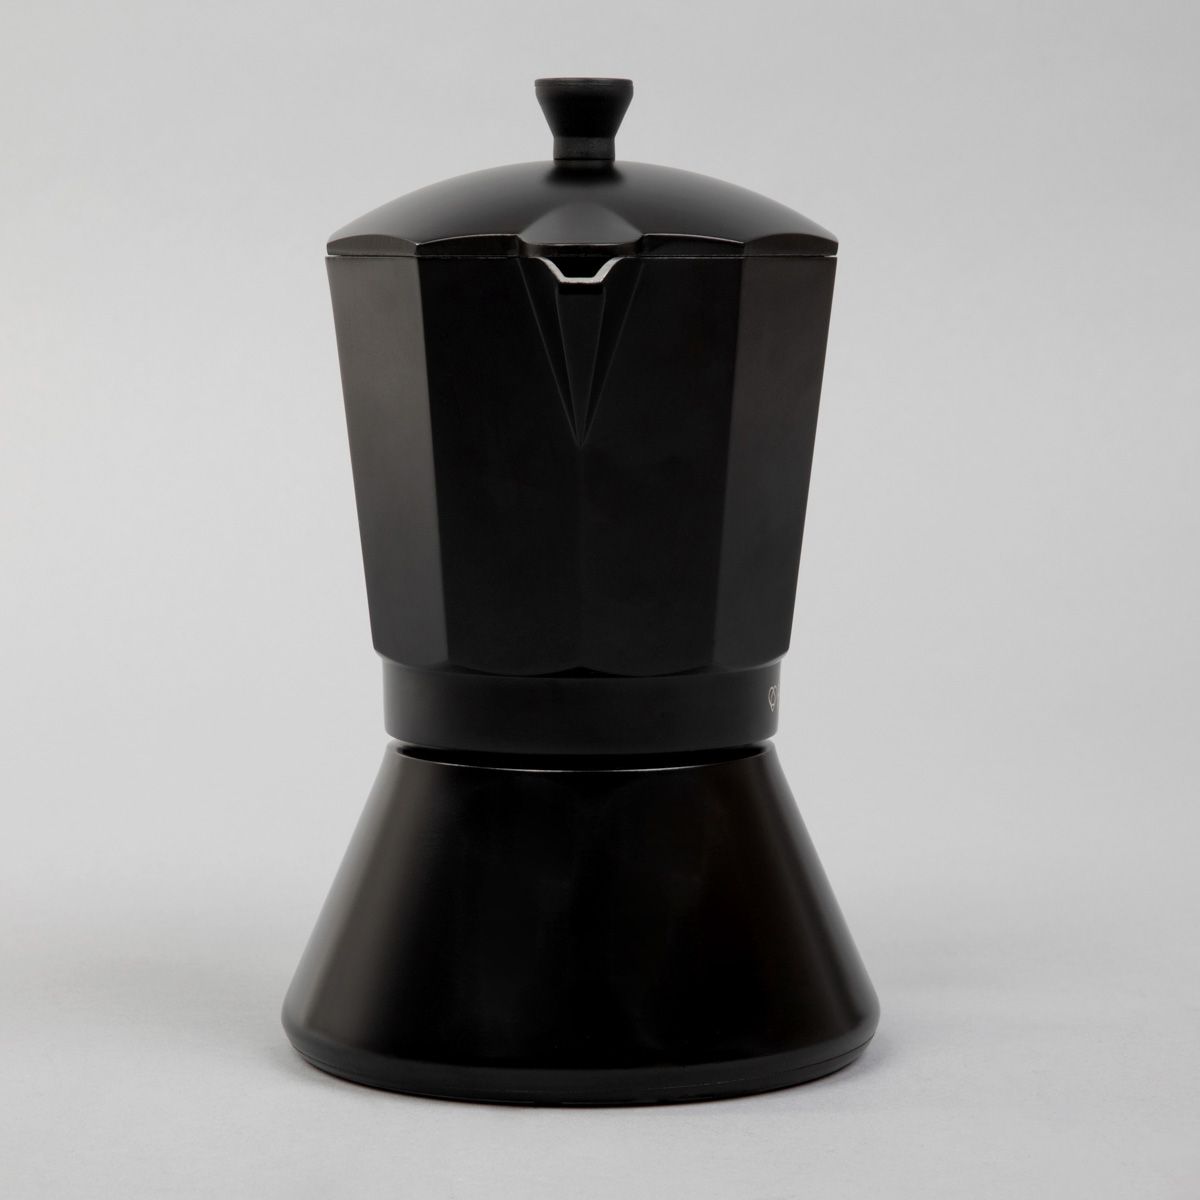 Kawiarka czarna 9 cup z personalizacją PREZENT NA WIELKANOC